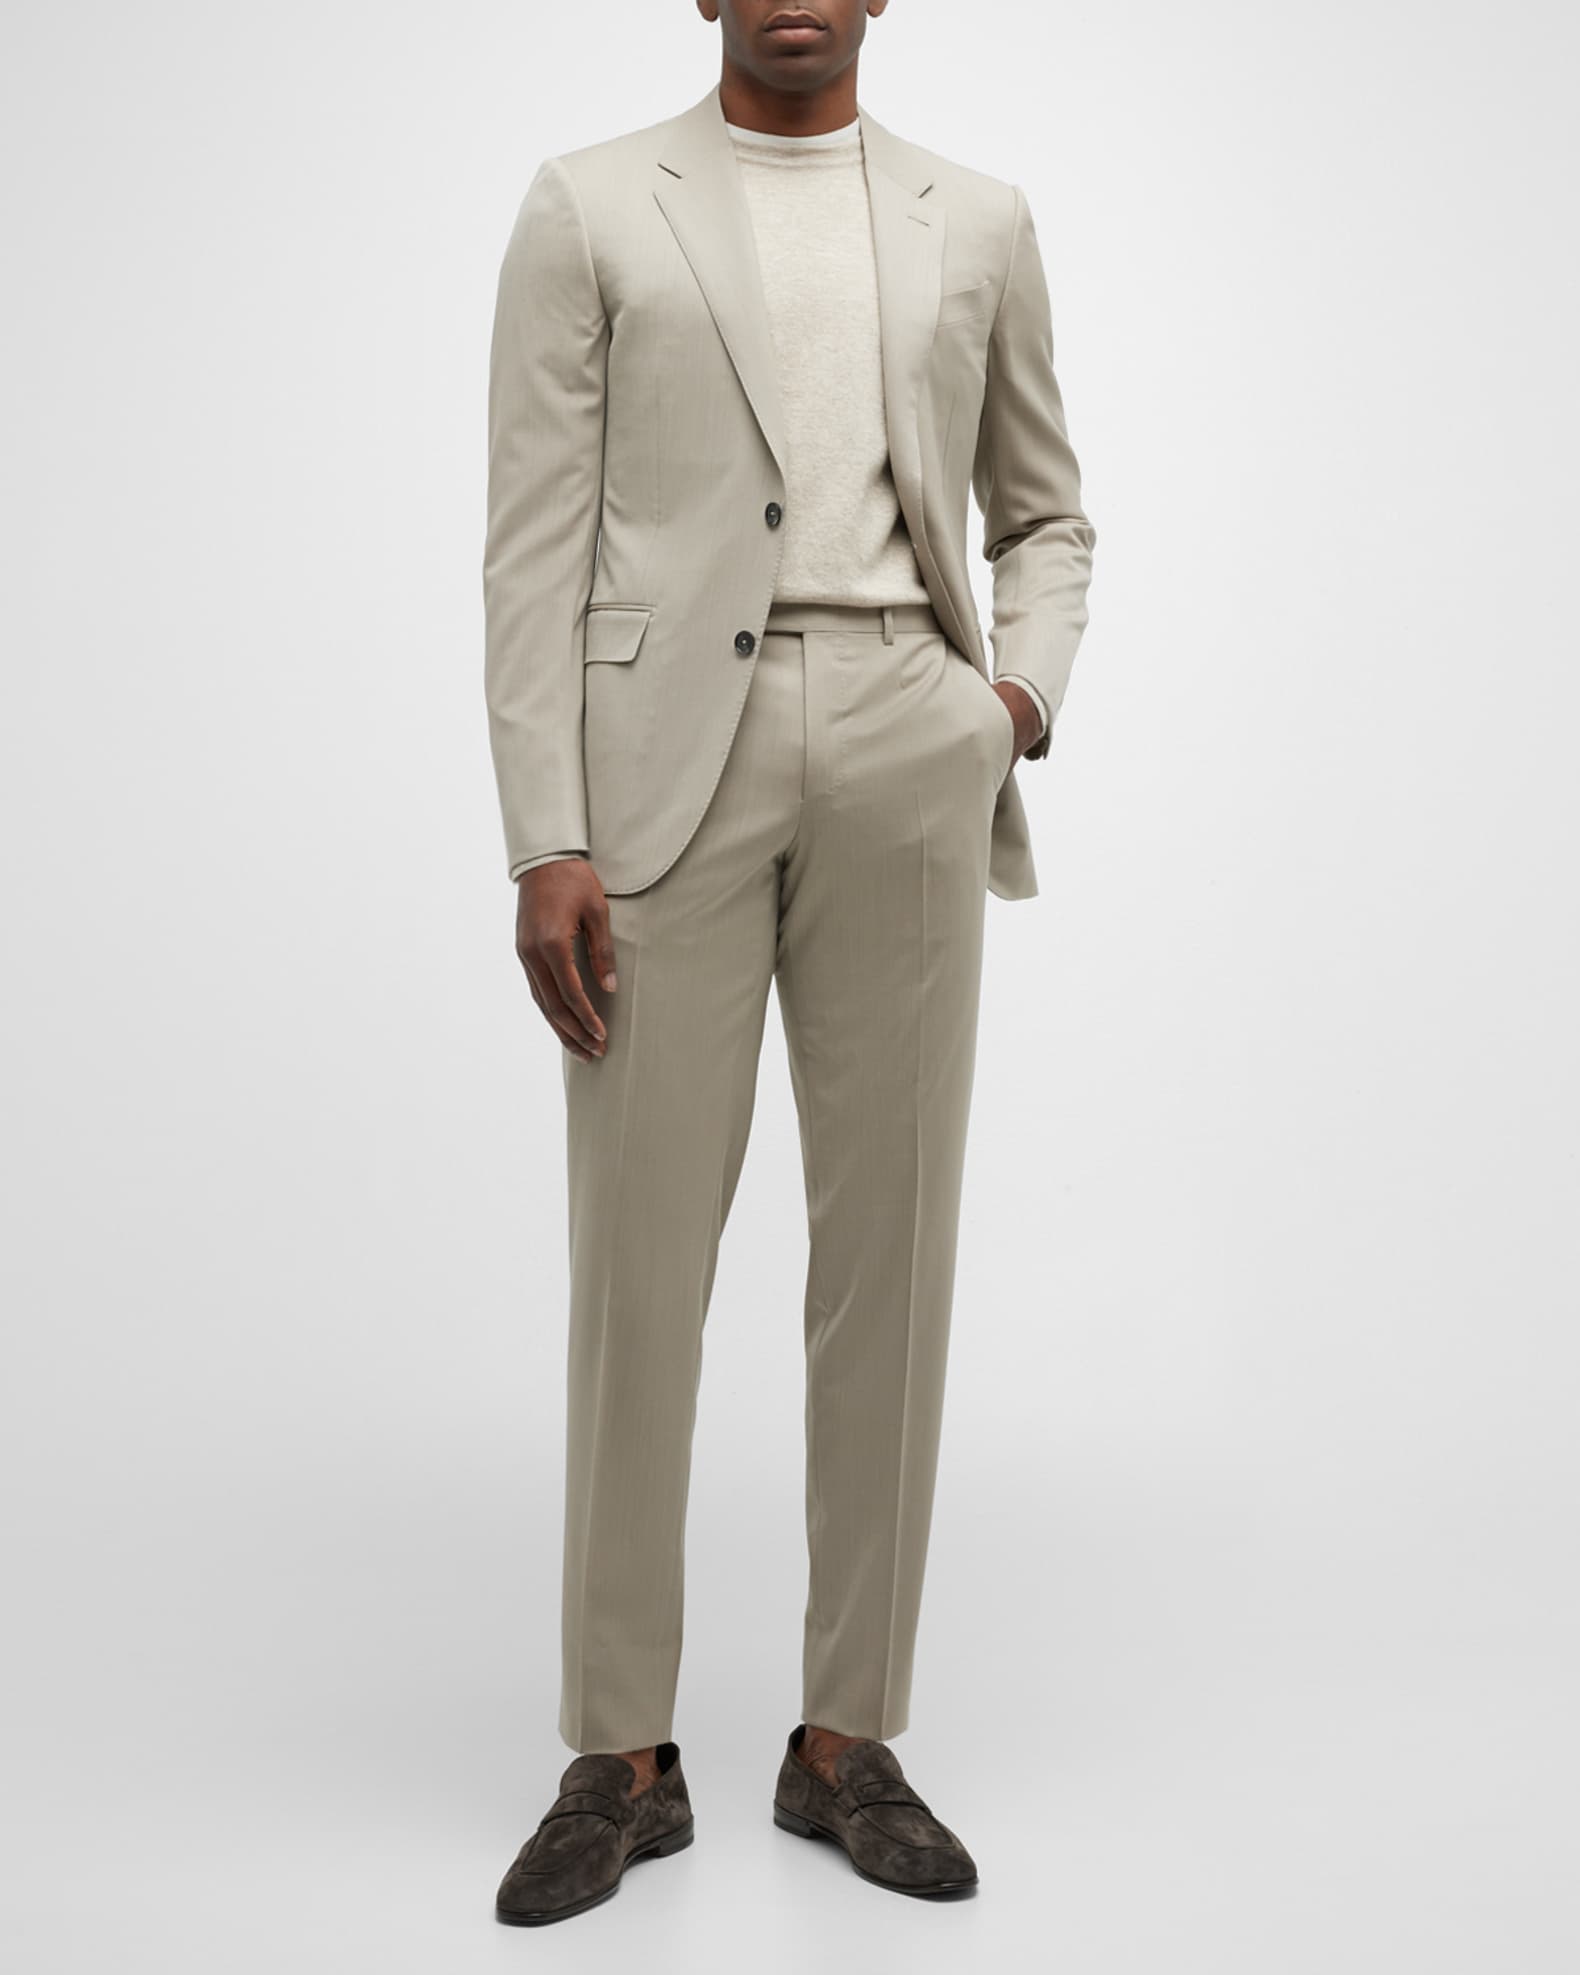 ZEGNA Men's Solid Wool Twill | Neiman Marcus